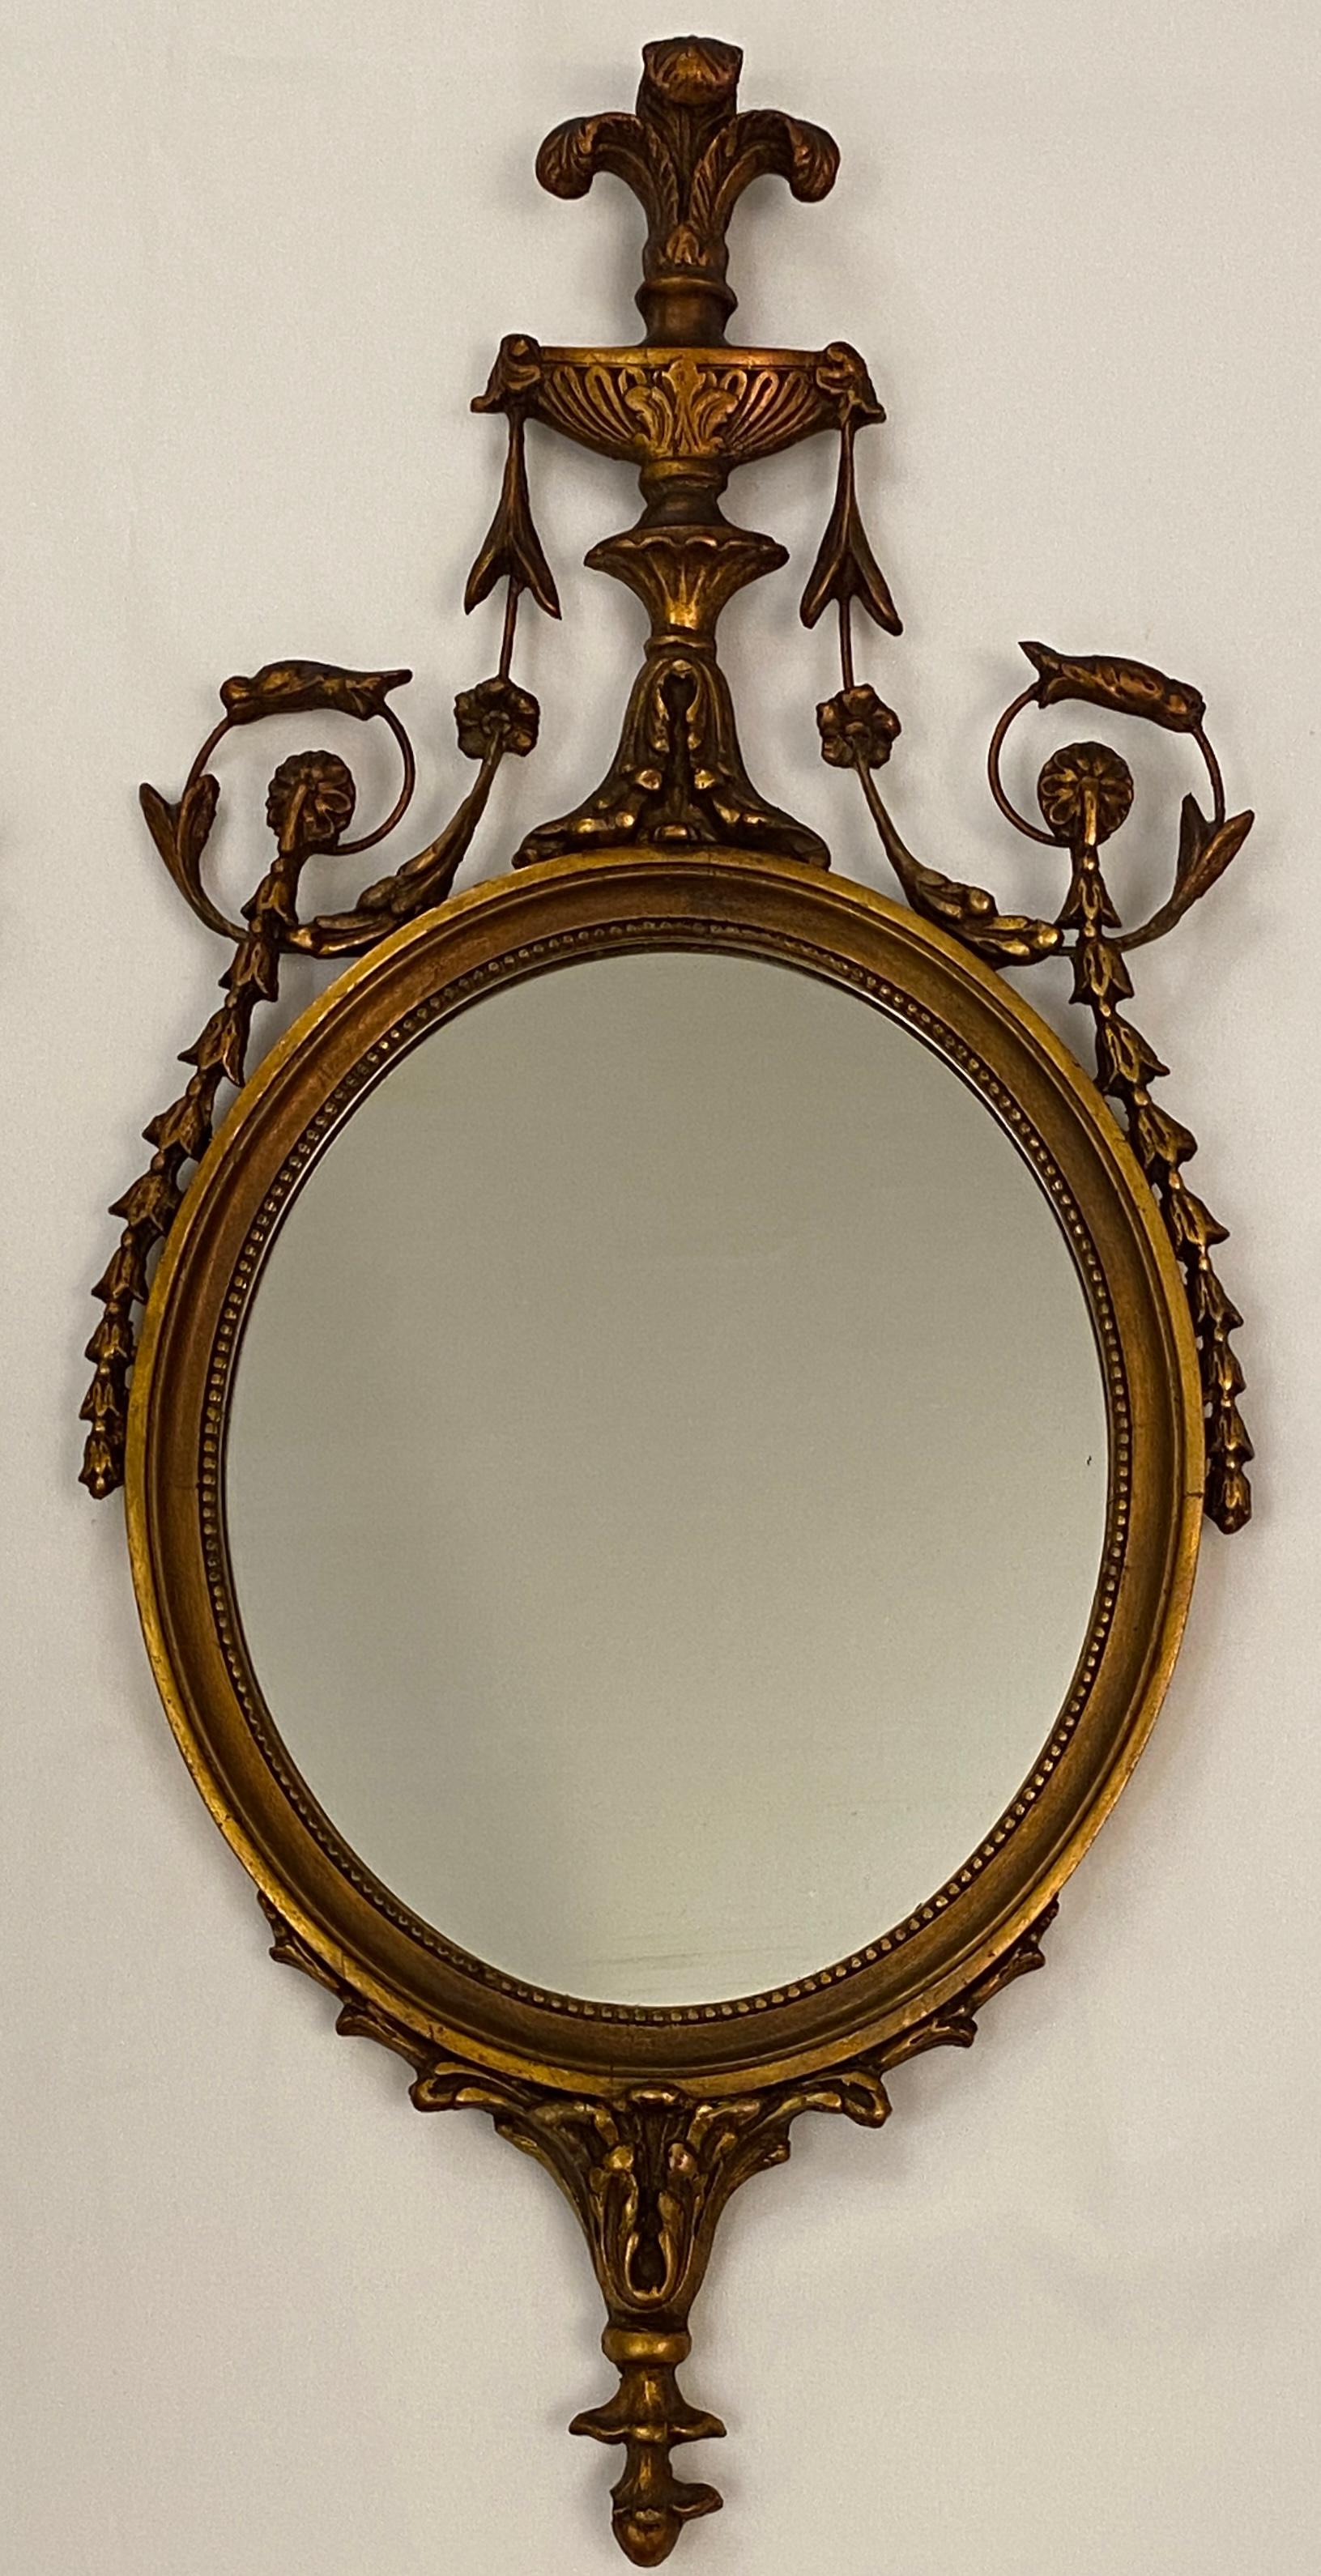 Ein Paar vergoldete ovale Spiegel im viktorianischen Stil. Die symmetrisch ausgeführten Spiegel weisen eine exquisite Ornamentik inklusive dekorativer Girlanden und Rocailles auf.

Dieses Paar Spiegel im viktorianischen Stil ist mit wunderschönen